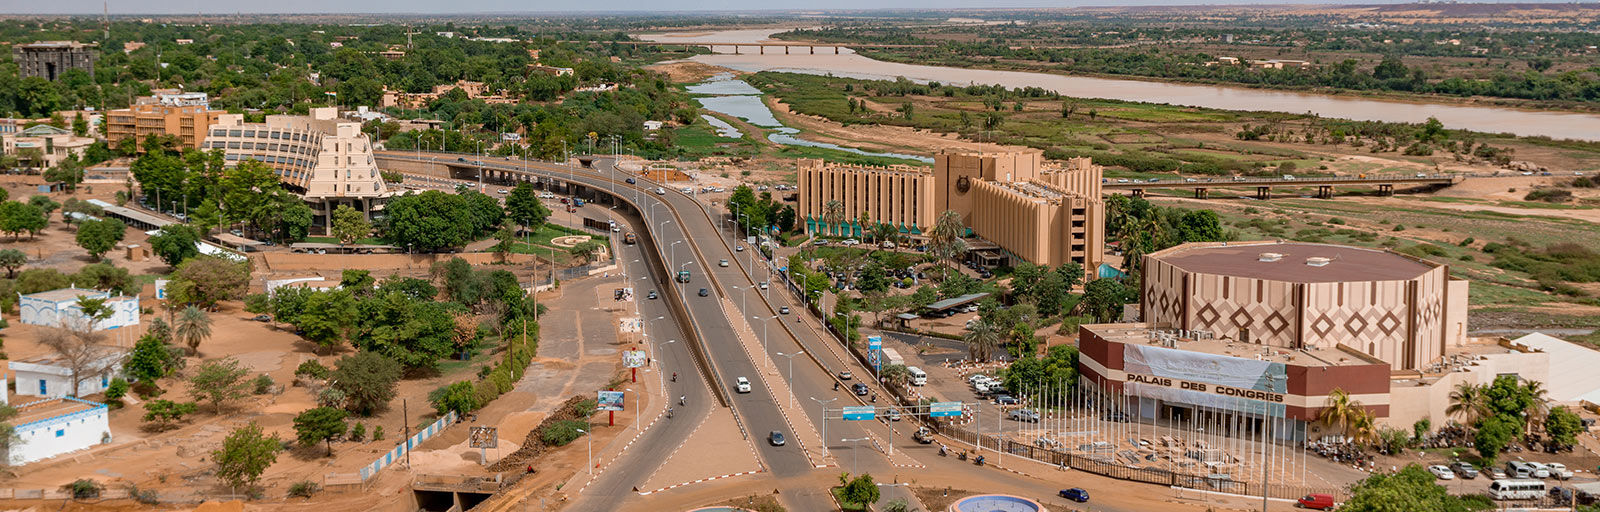 Niamey Seyahati Rehberi: İstanbul'dan Niamey'e Ulaşım, Konaklama ve Gezilecek Yerler